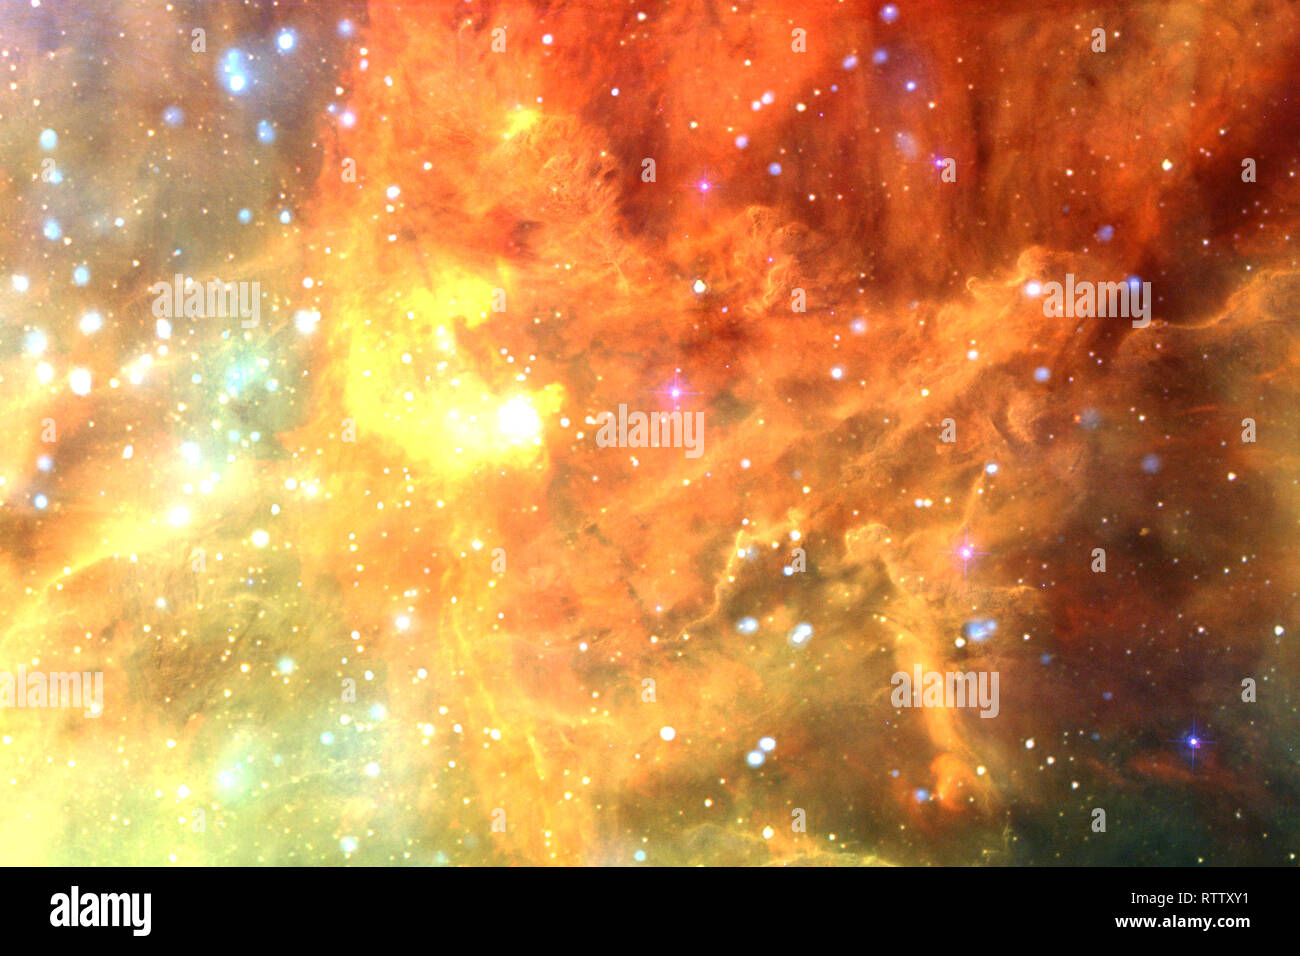 Ngân hà - Trong vũ trụ rộng lớn, ngân hà là nơi tuyệt vời nhất. Những vì sao đan xen cùng những dải sáng len lỏi, tạo nên một khung cảnh kỳ diệu và bất tận. Ảnh ngân hà sẽ đưa bạn vào một cuộc hành trình quan sát vũ trụ đầy hứng khởi.